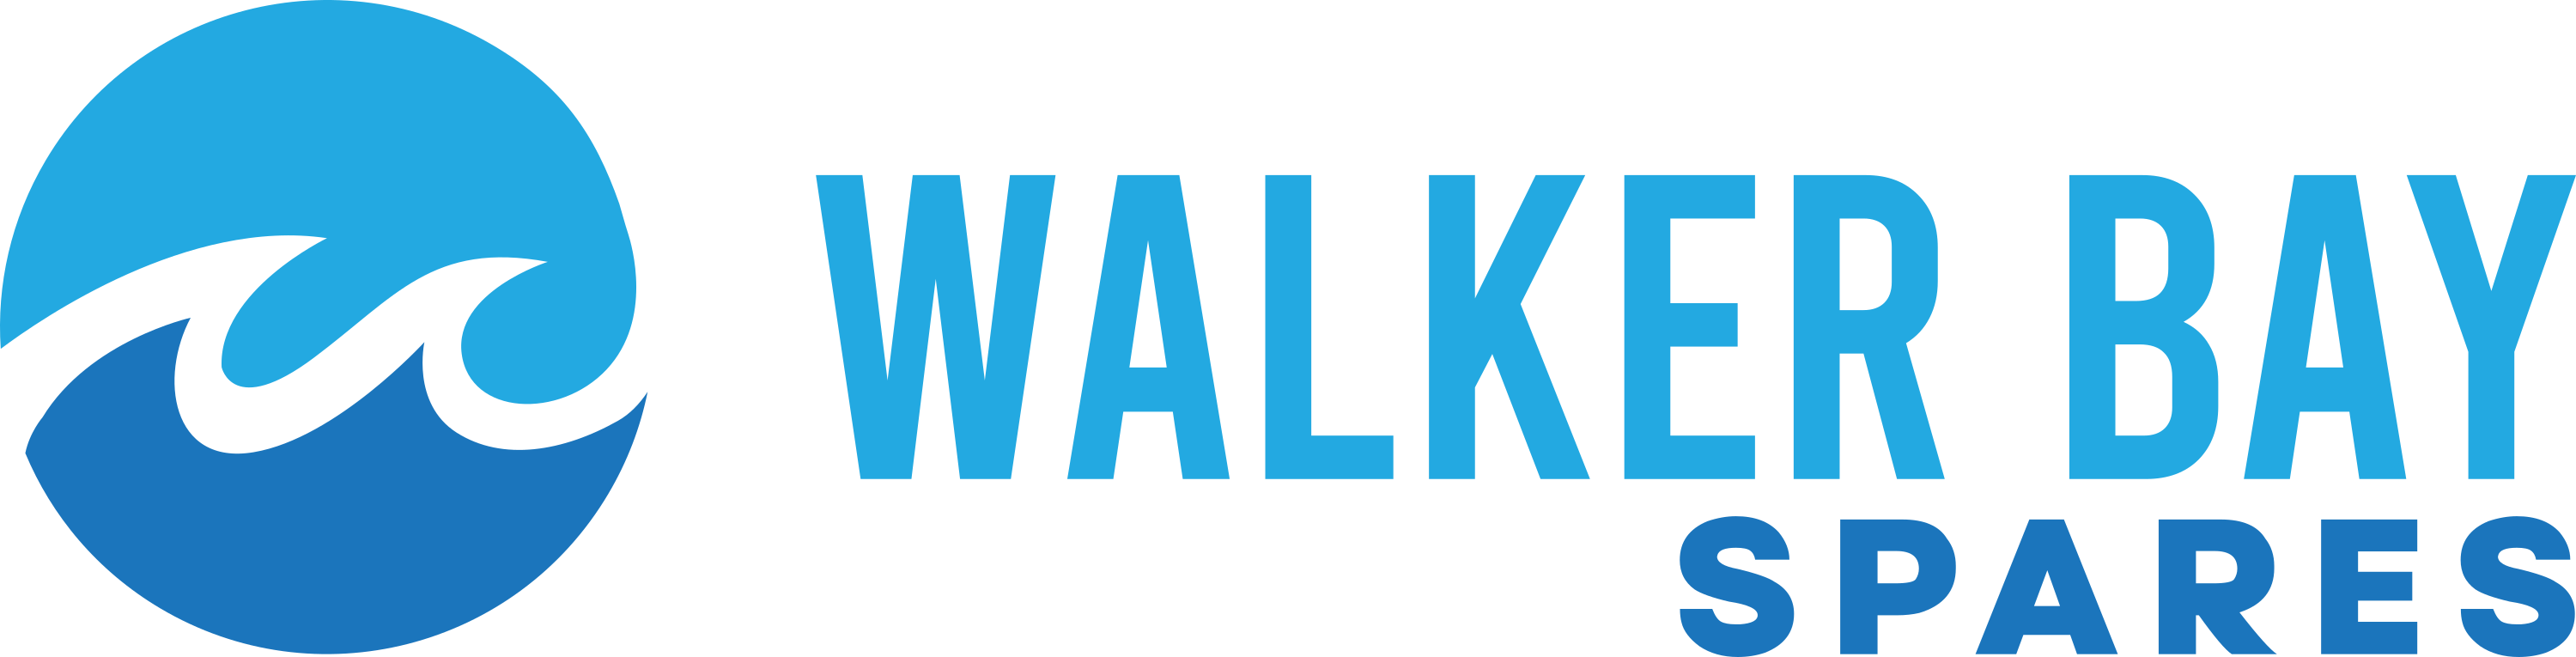 www.walkerbayspares.com